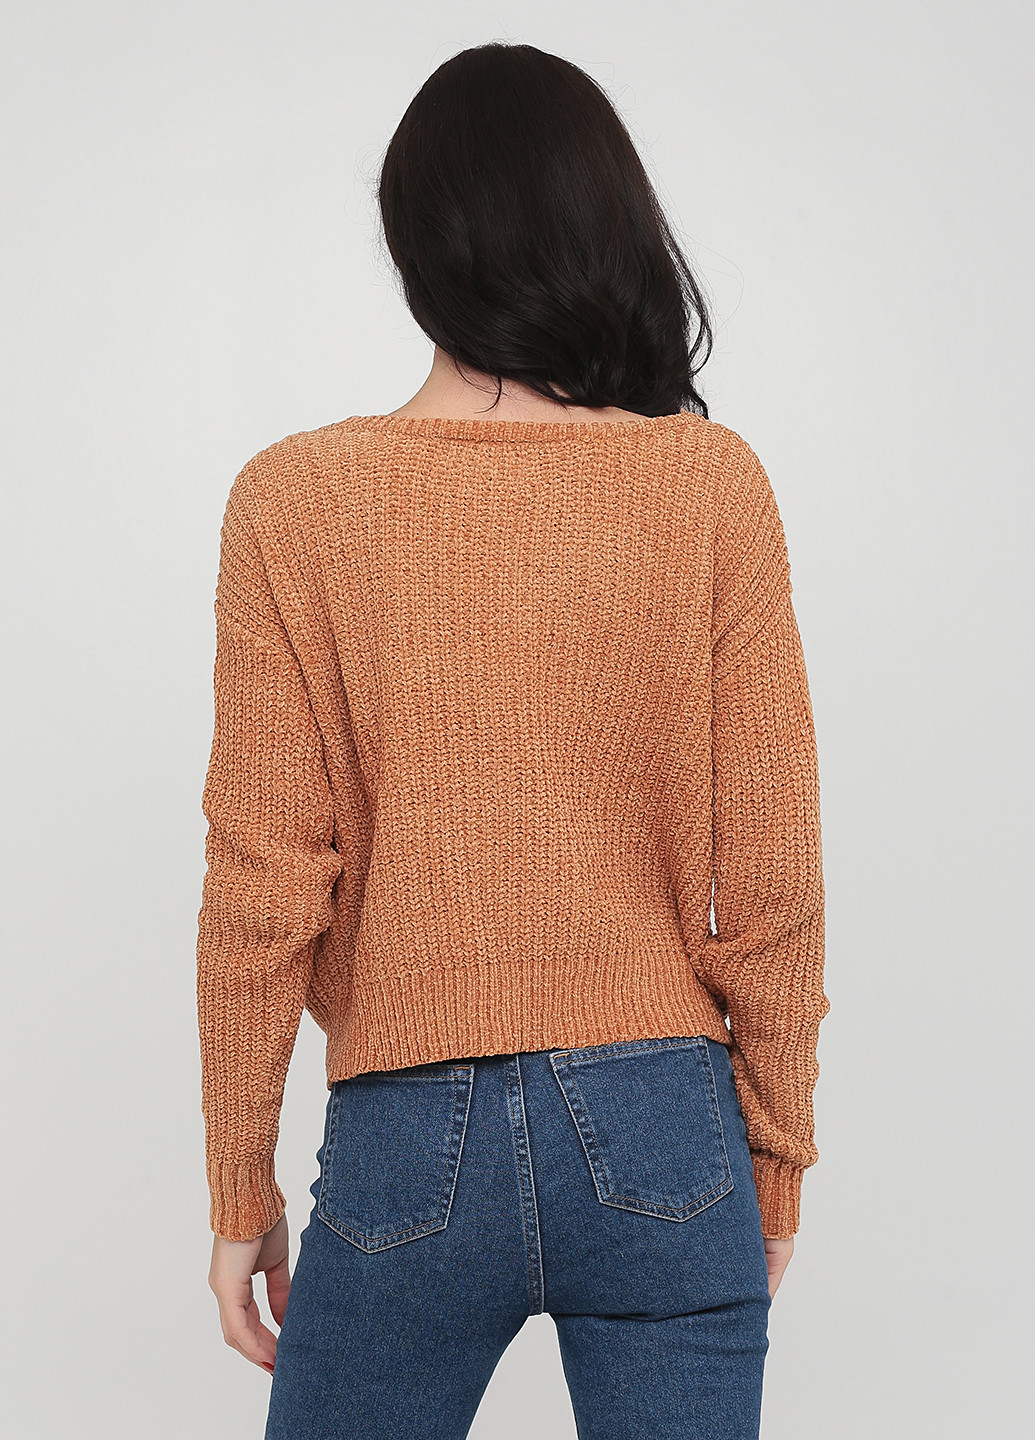 Светло-коричневый демисезонный пуловер пуловер CHD